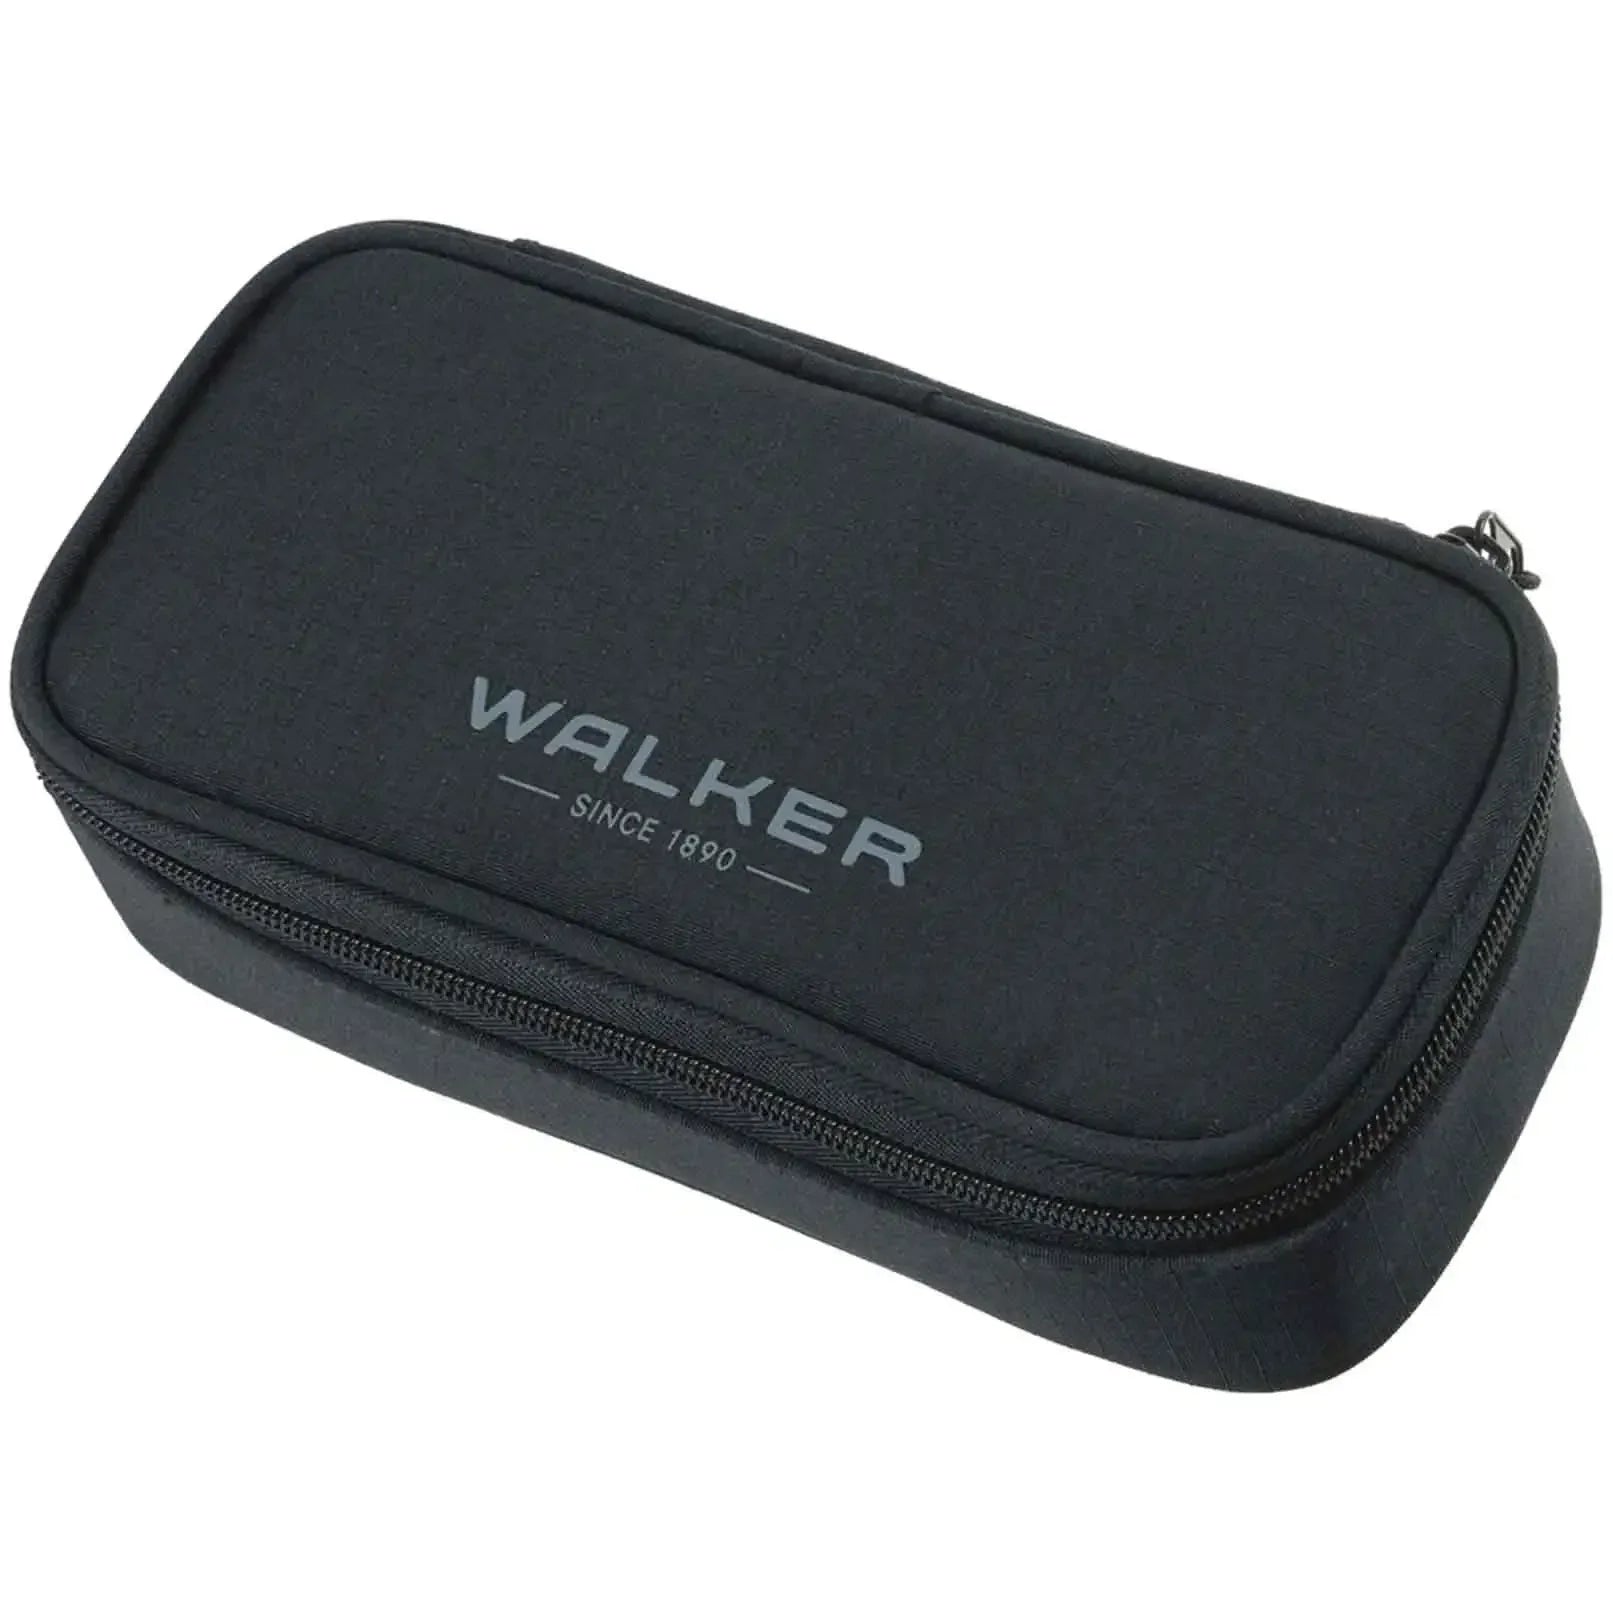 Walker Accessoires Lifestyle Pencil Box 21 cm - Anthracite